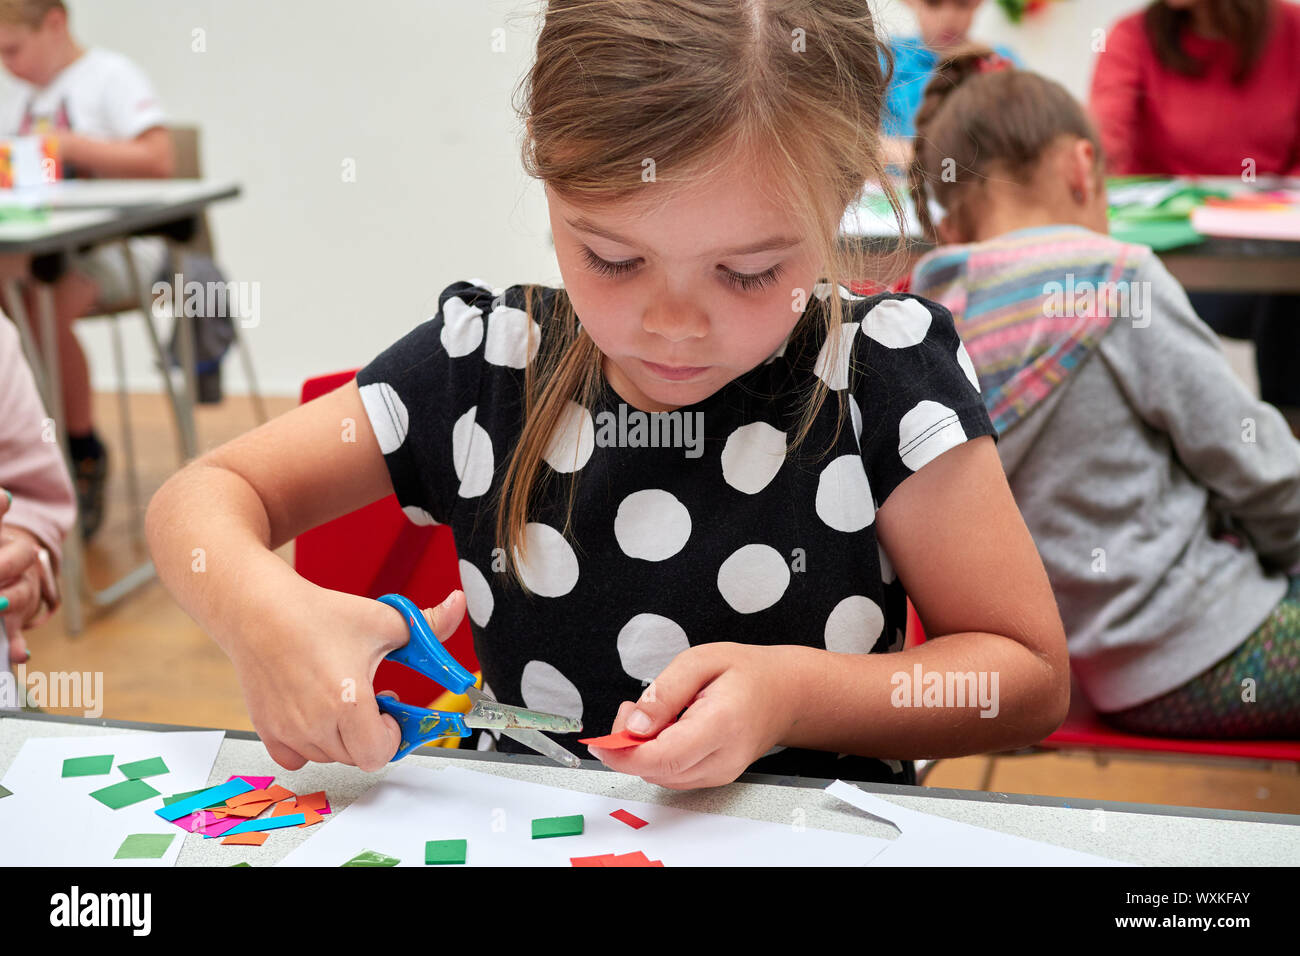 Teaching Kindergarteners How To Use Scissors - Kindergarten Chaos